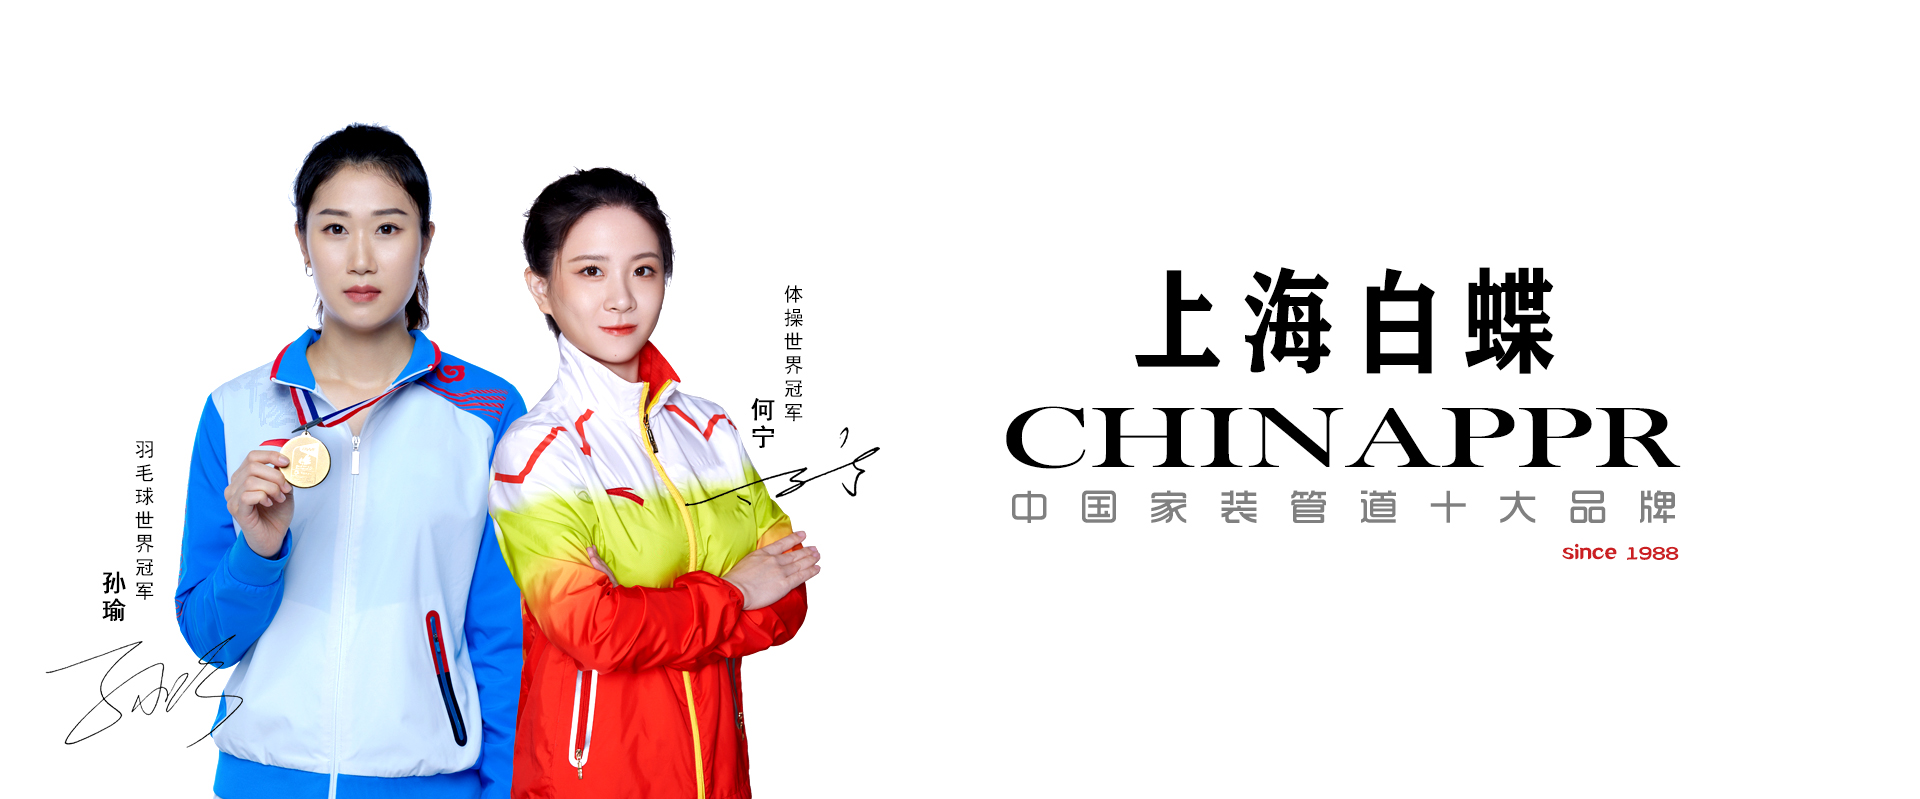 上海白蝶管業世界冠軍品牌形象代言人